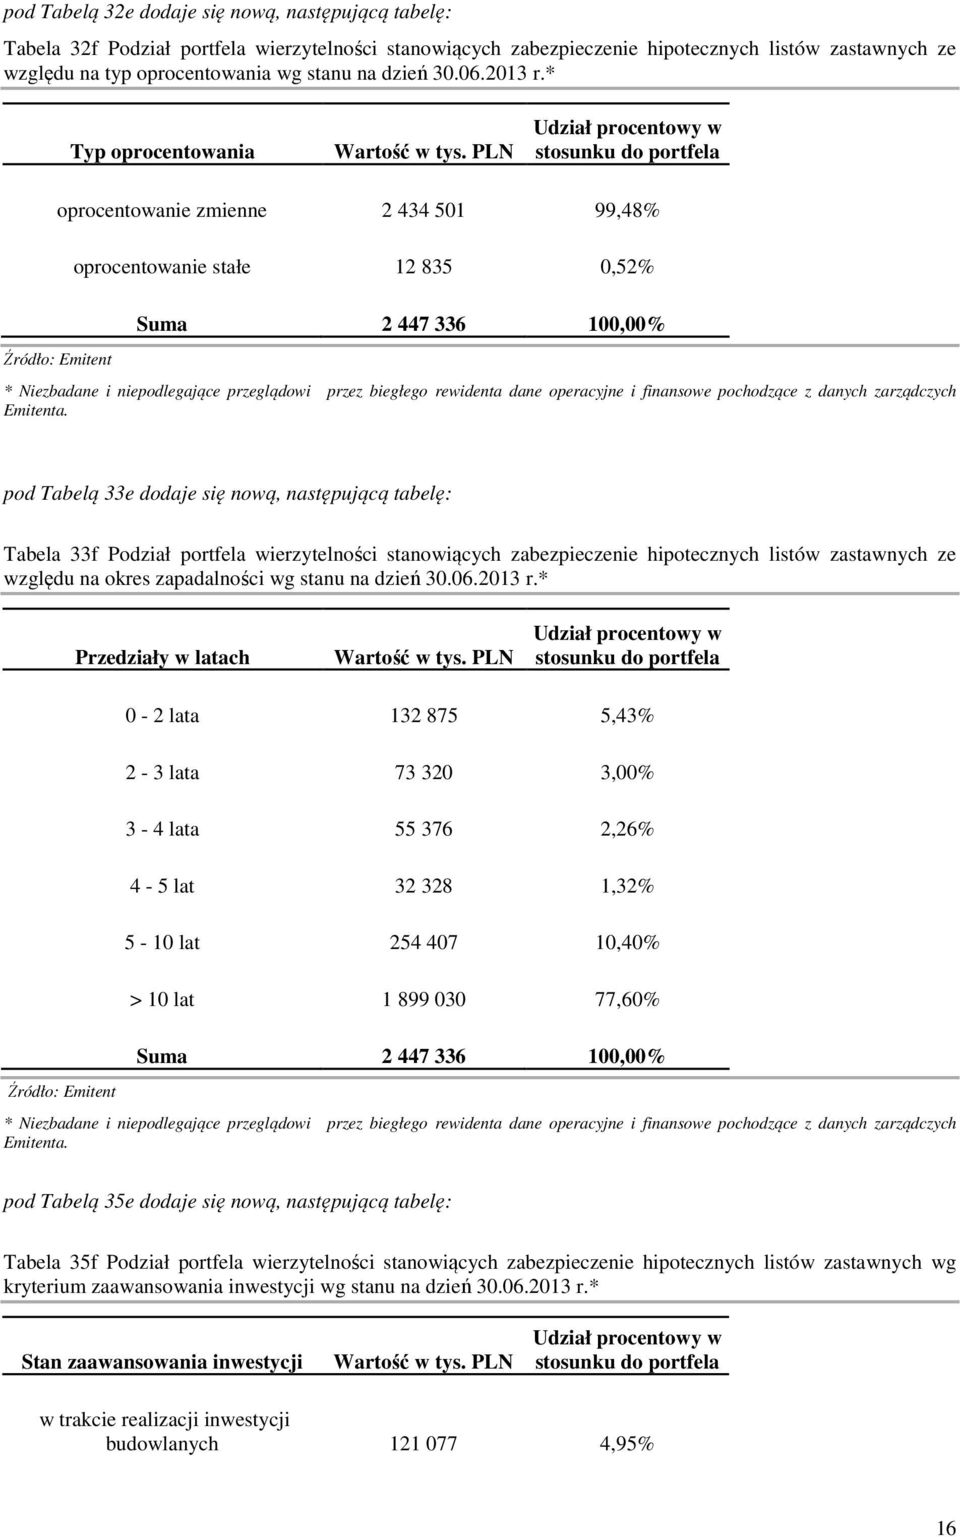 PLN Udział procentowy w stosunku do portfela oprocentowanie zmienne 2 434 501 99,48% oprocentowanie stałe 12 835 0,52% Suma 2 447 336 100,00% pod Tabelą 33e dodaje się nową, następującą tabelę: